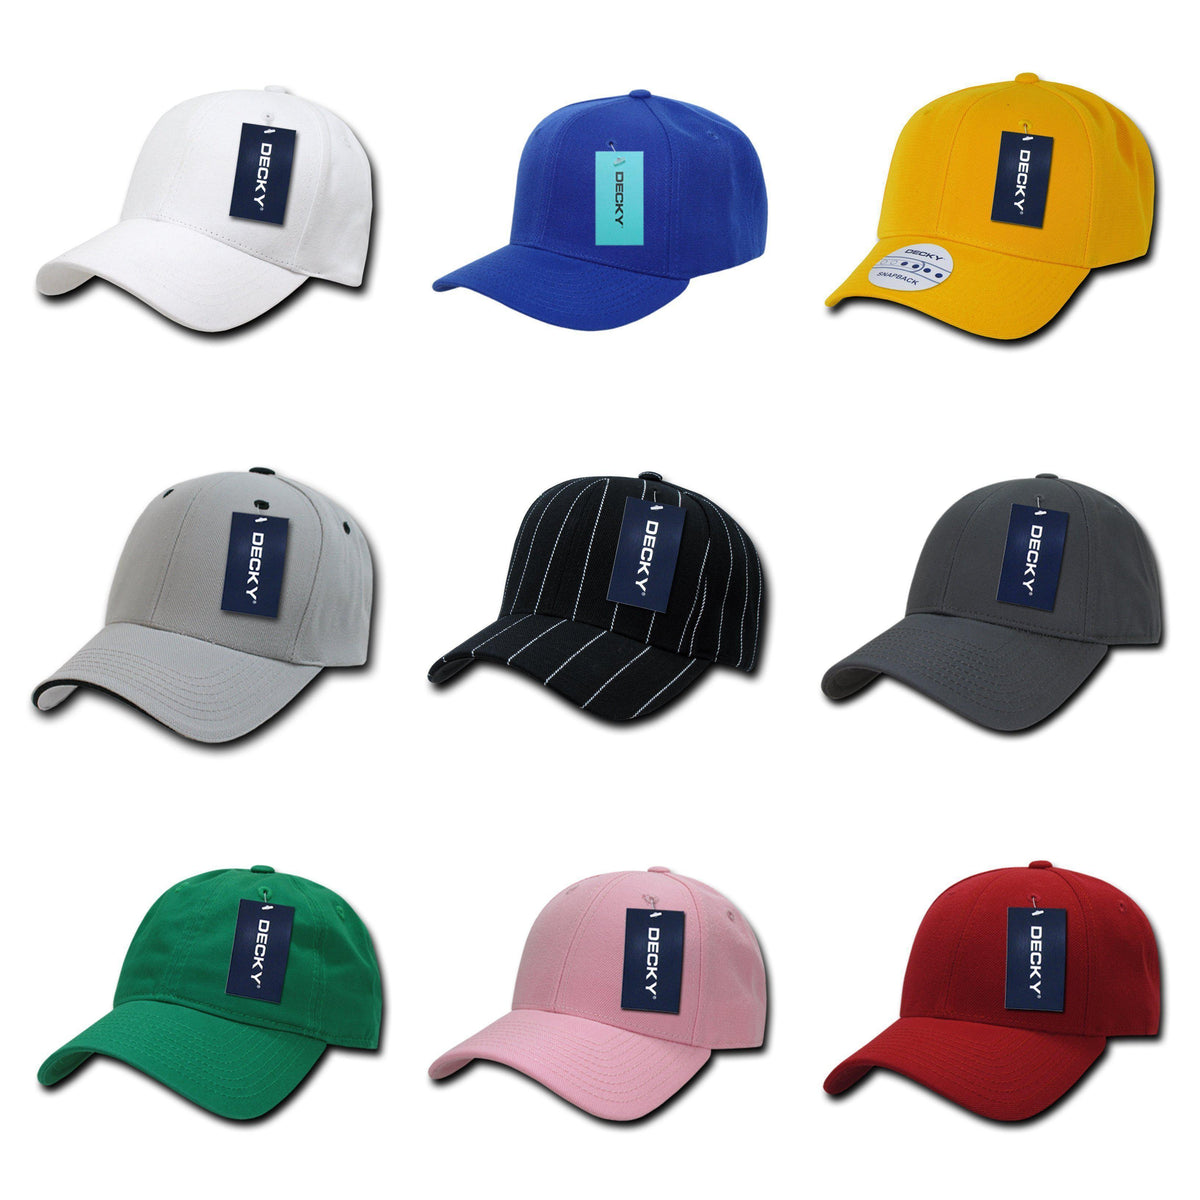 Bulk Baseball Hats, Wholesale Baseball Caps - Volume Discounts, Free ...